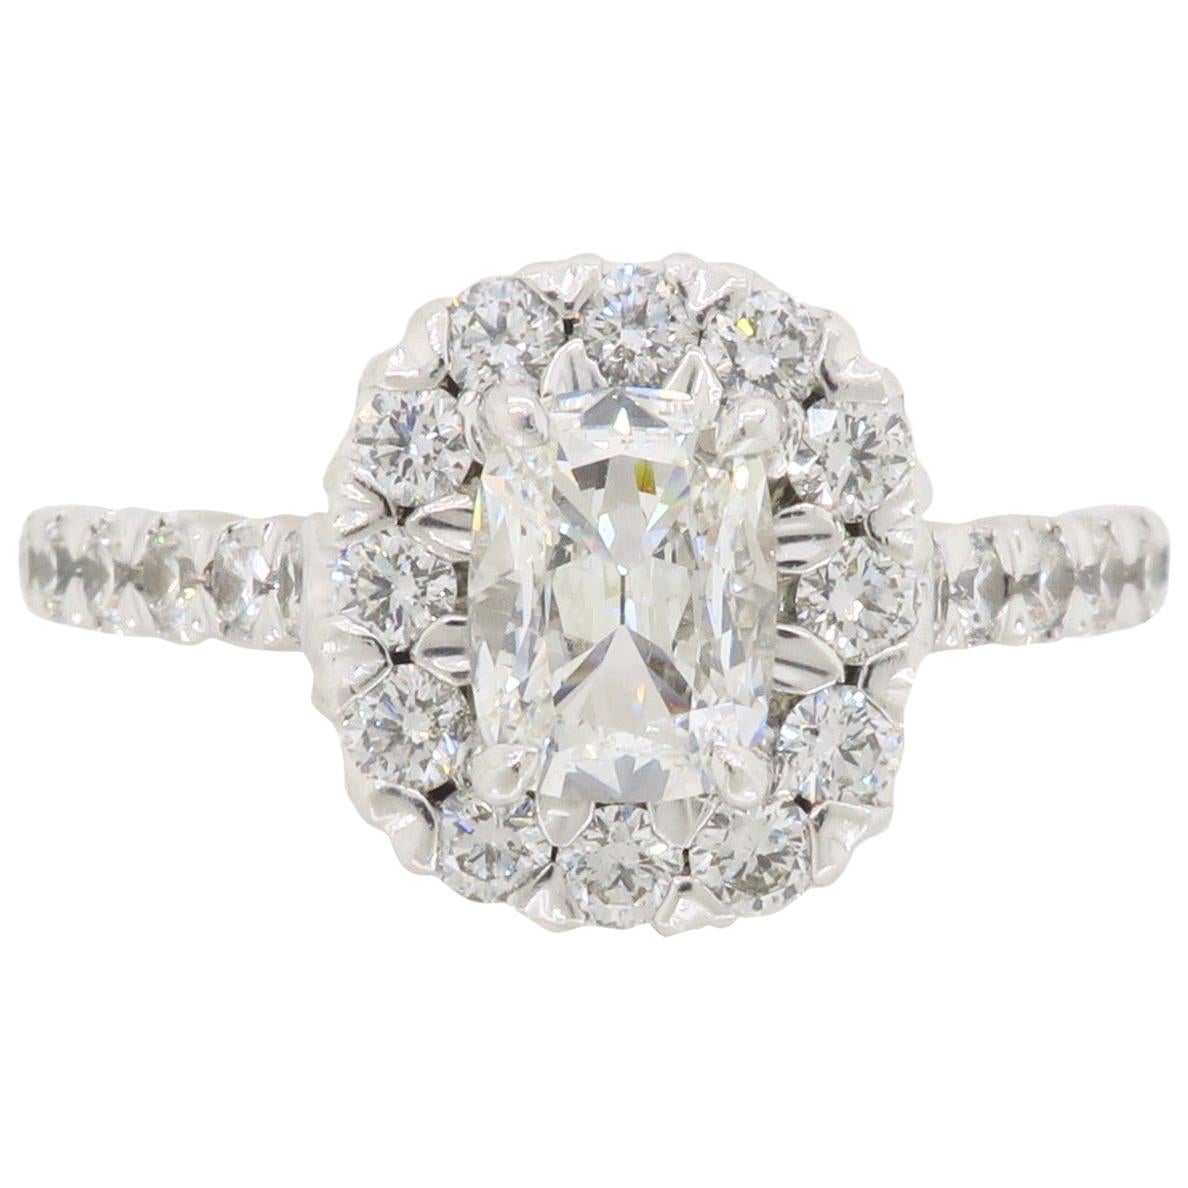 Henri Daussi Signature Halo Diamond Engagement Ring in 18 Karat White Gold